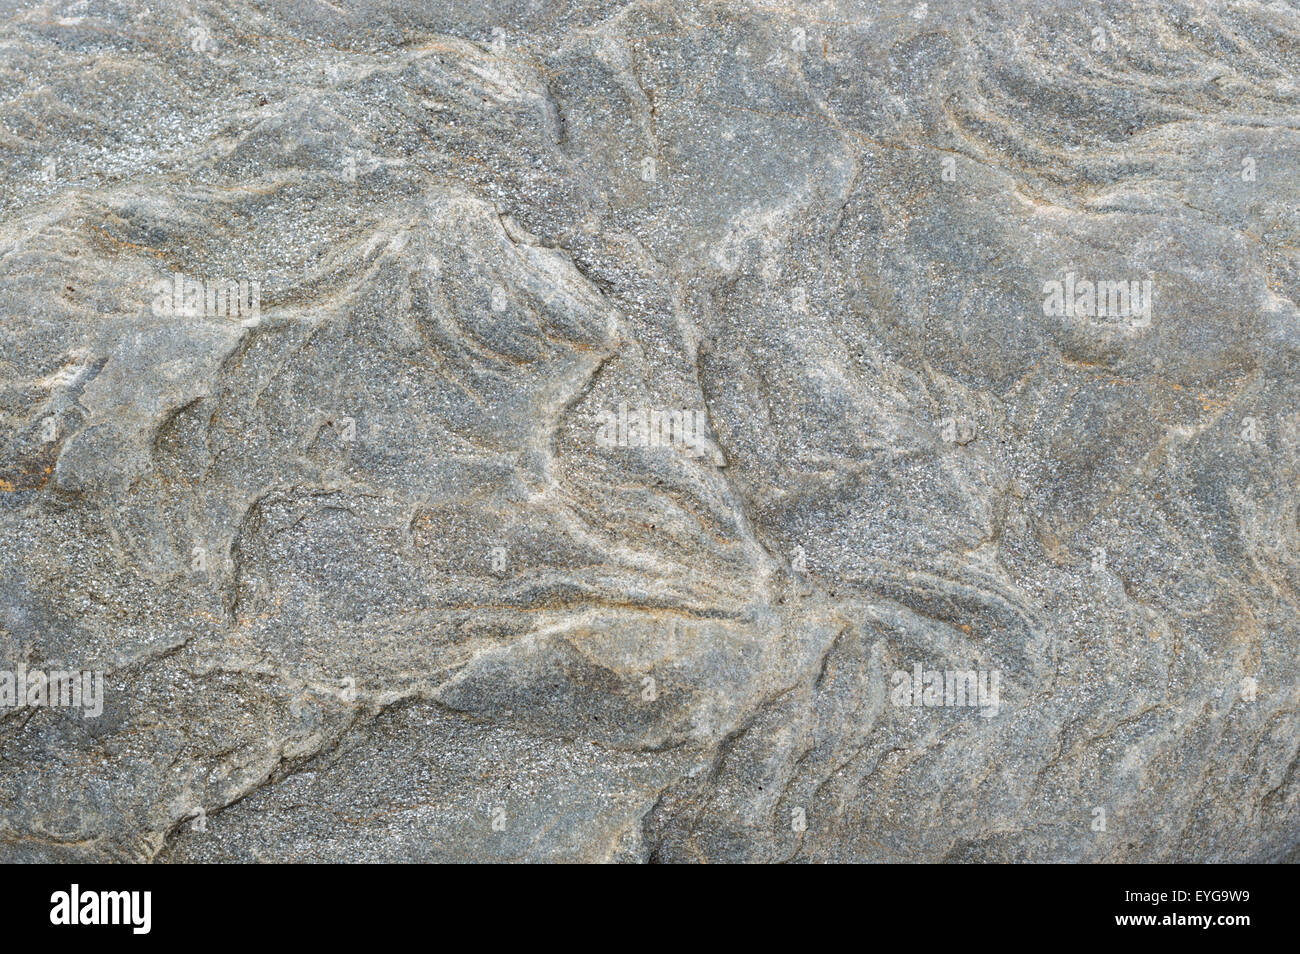 Imagen de fotograma completo de los patrones naturales de la roca/piedra Foto de stock